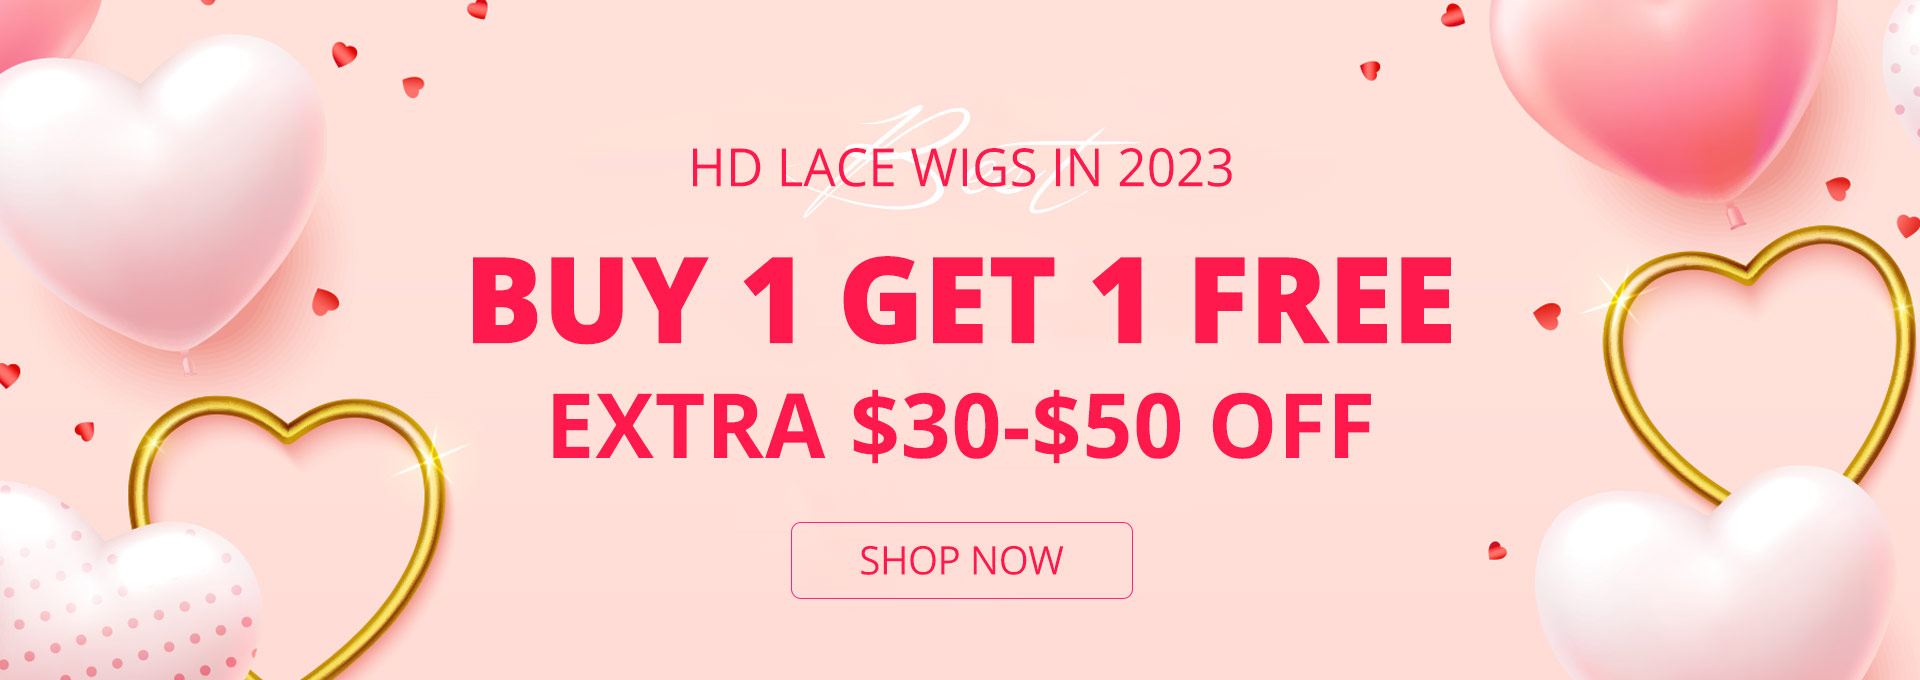 Alipearl HD Lace Wigs